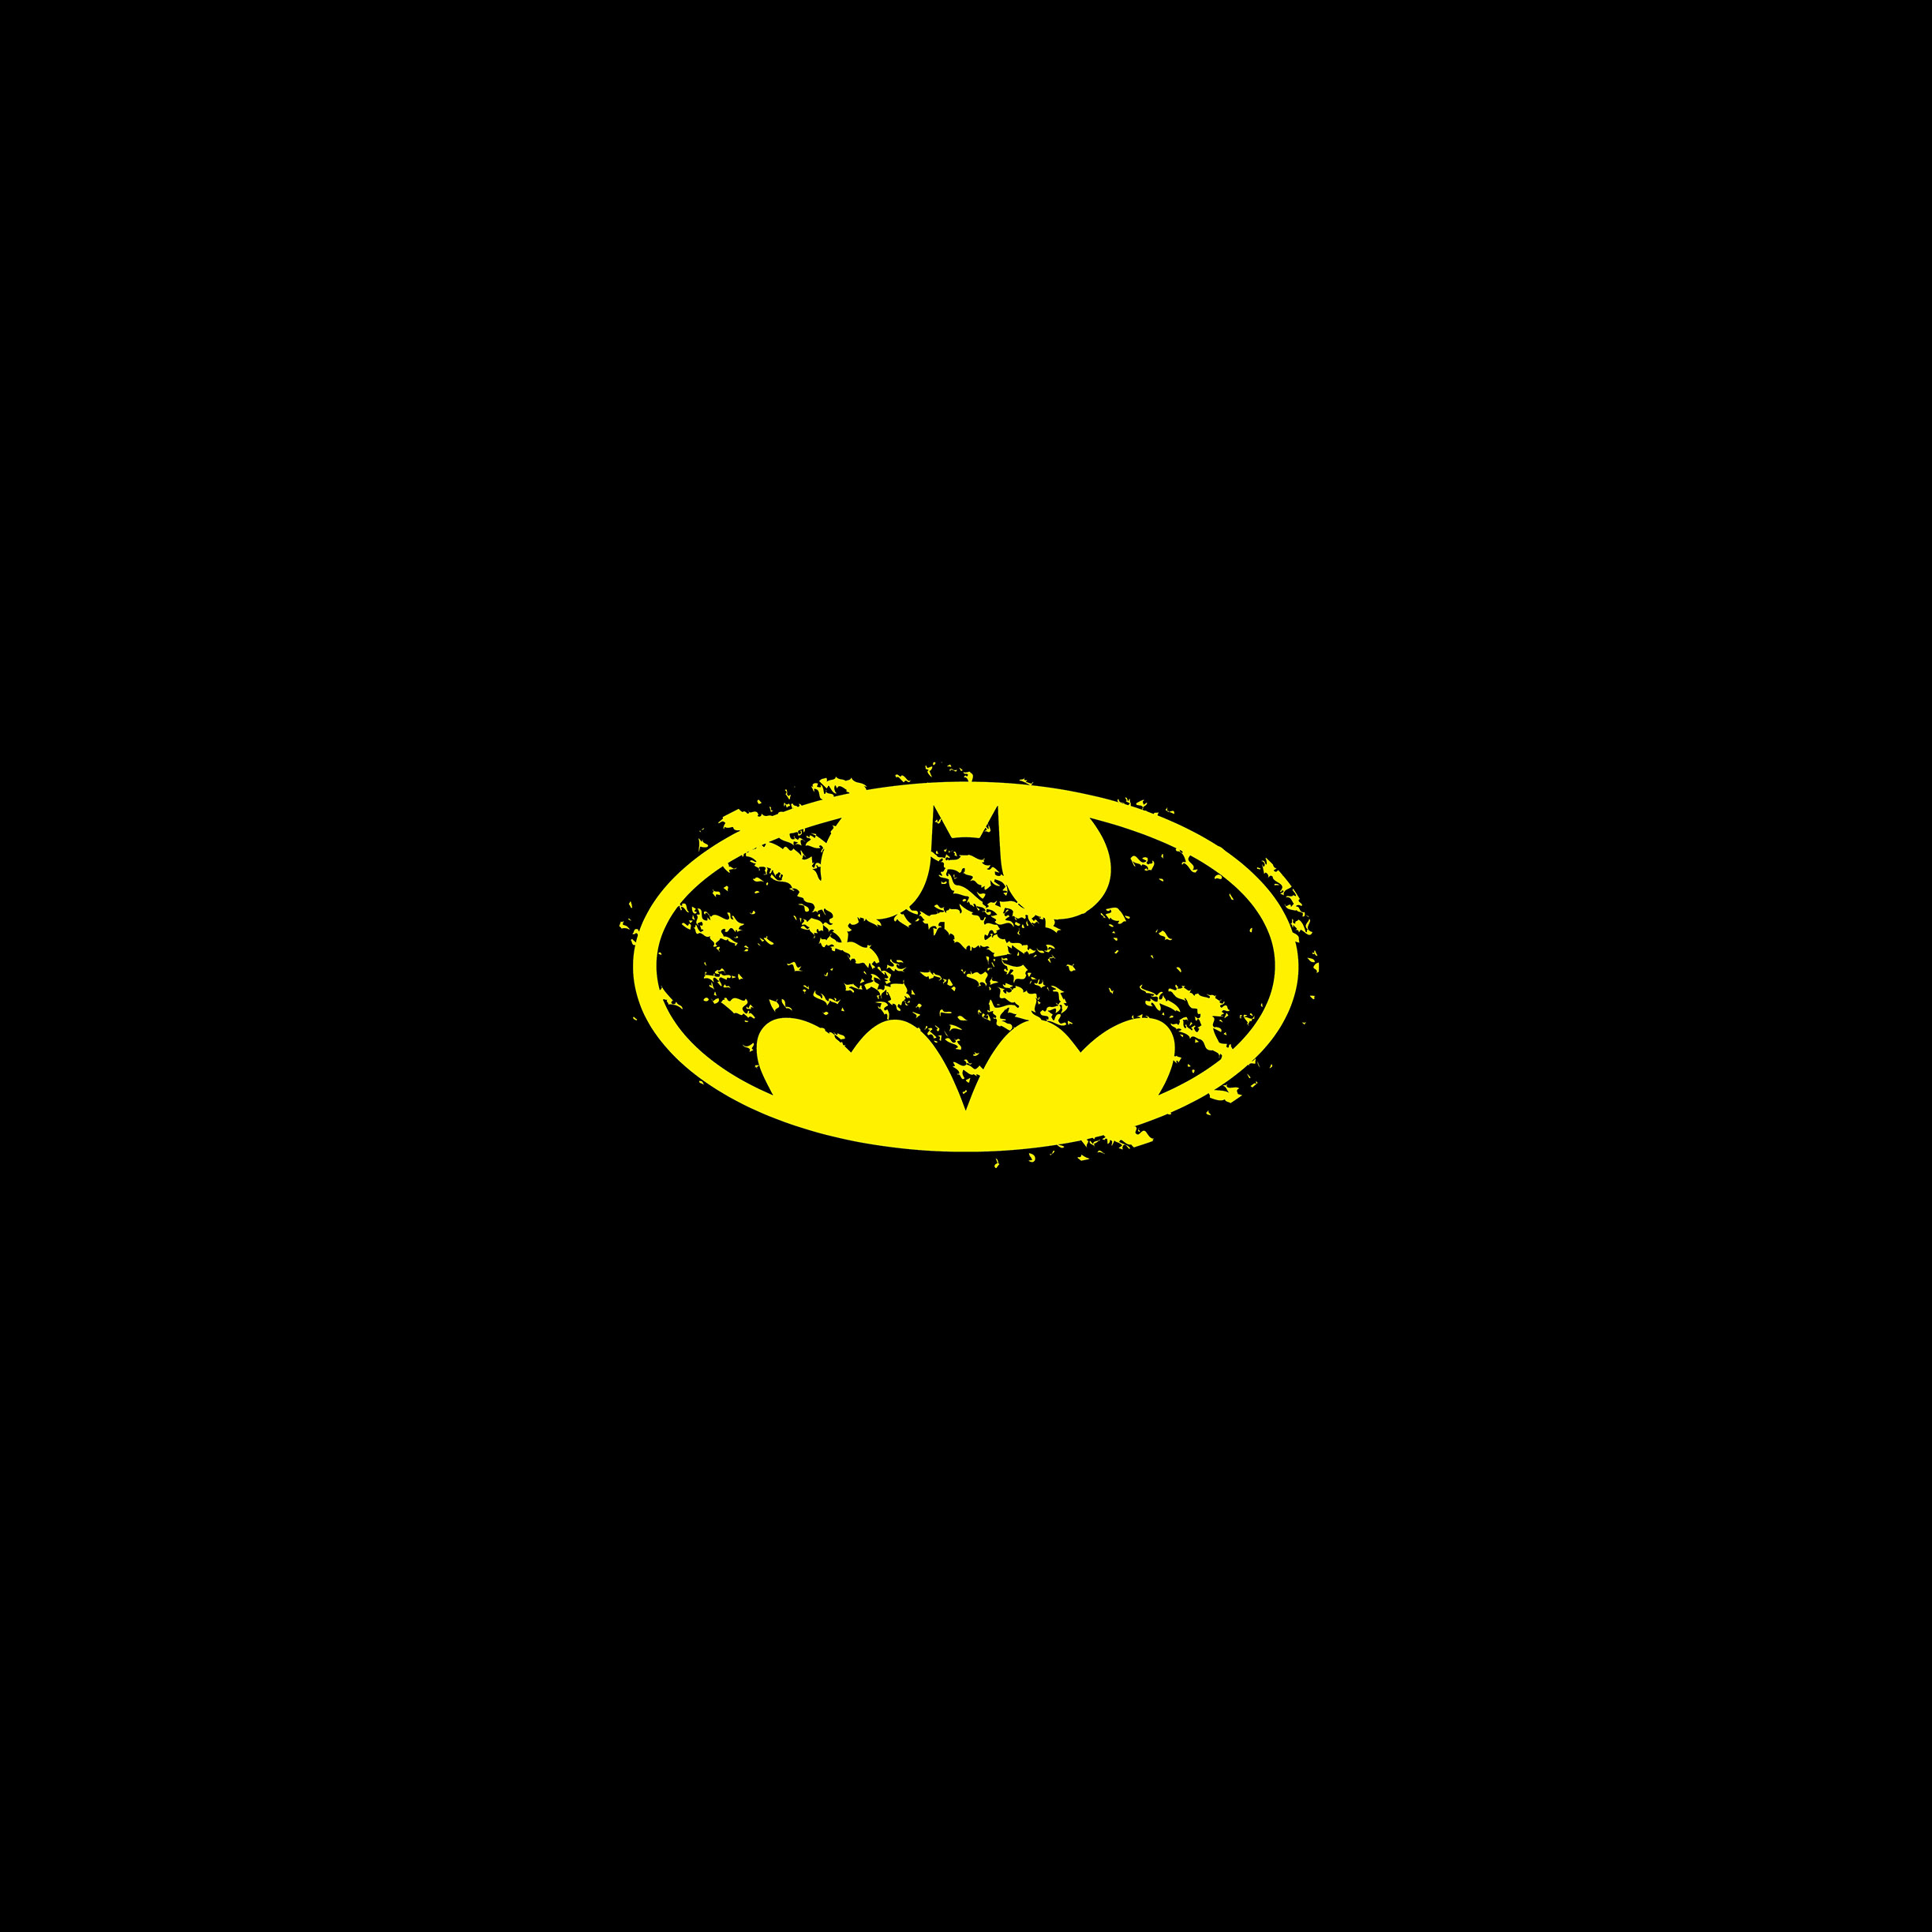 Download wallpaper 2248x2248 dark knight batman superhero art ipad air  ipad air 2 ipad 3 ipad 4 ipad mini 2 ipad mini 3 2248x2248 hd  background 17481